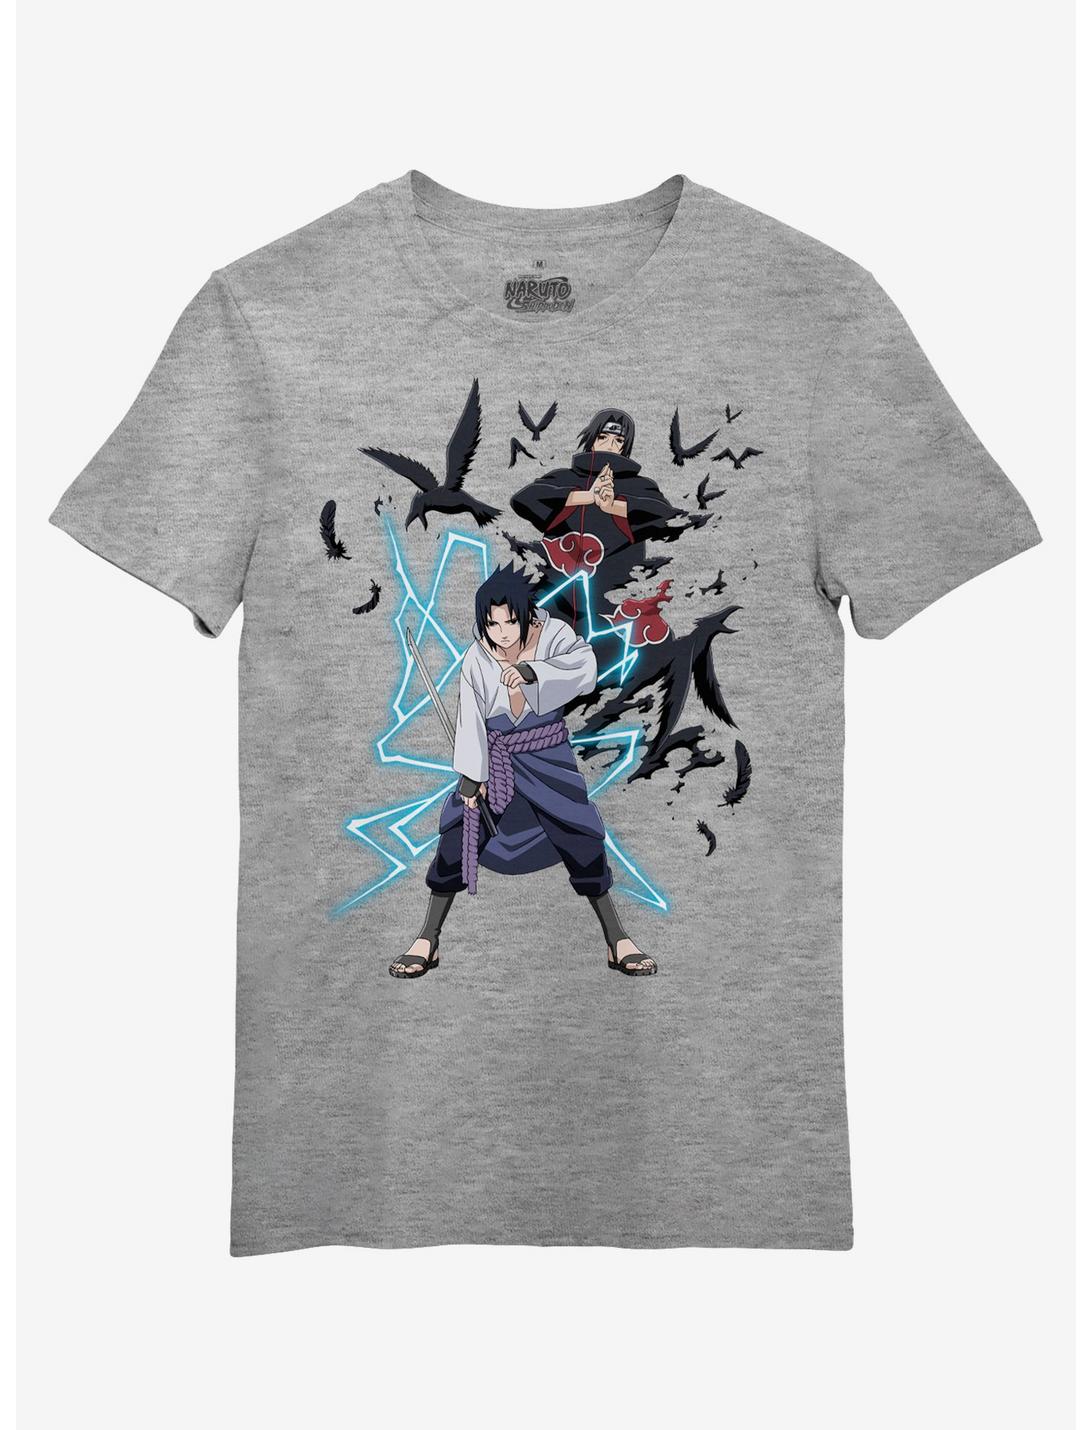 Naruto Shippuden Sasuke & Itachi T-Shirt, GREY, hi-res